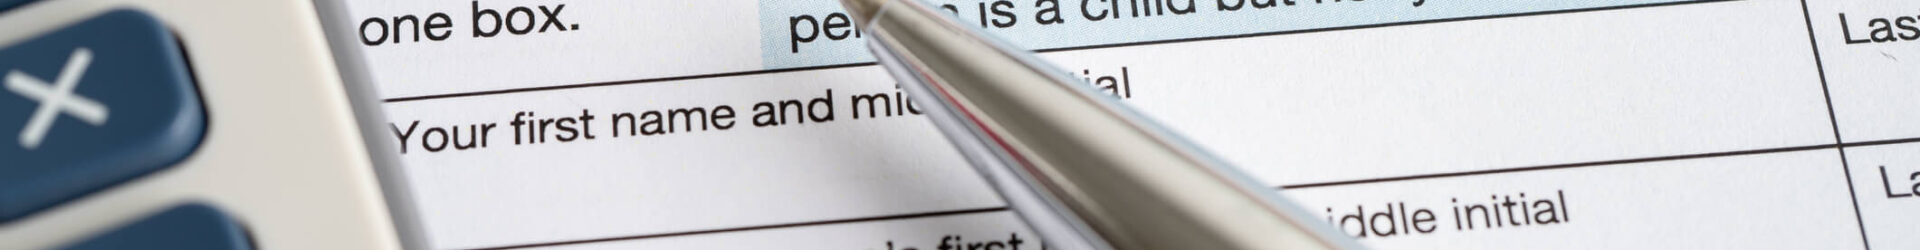 elegir un estado civil para efectos de declaración de impuestos en el formulario de impuestos